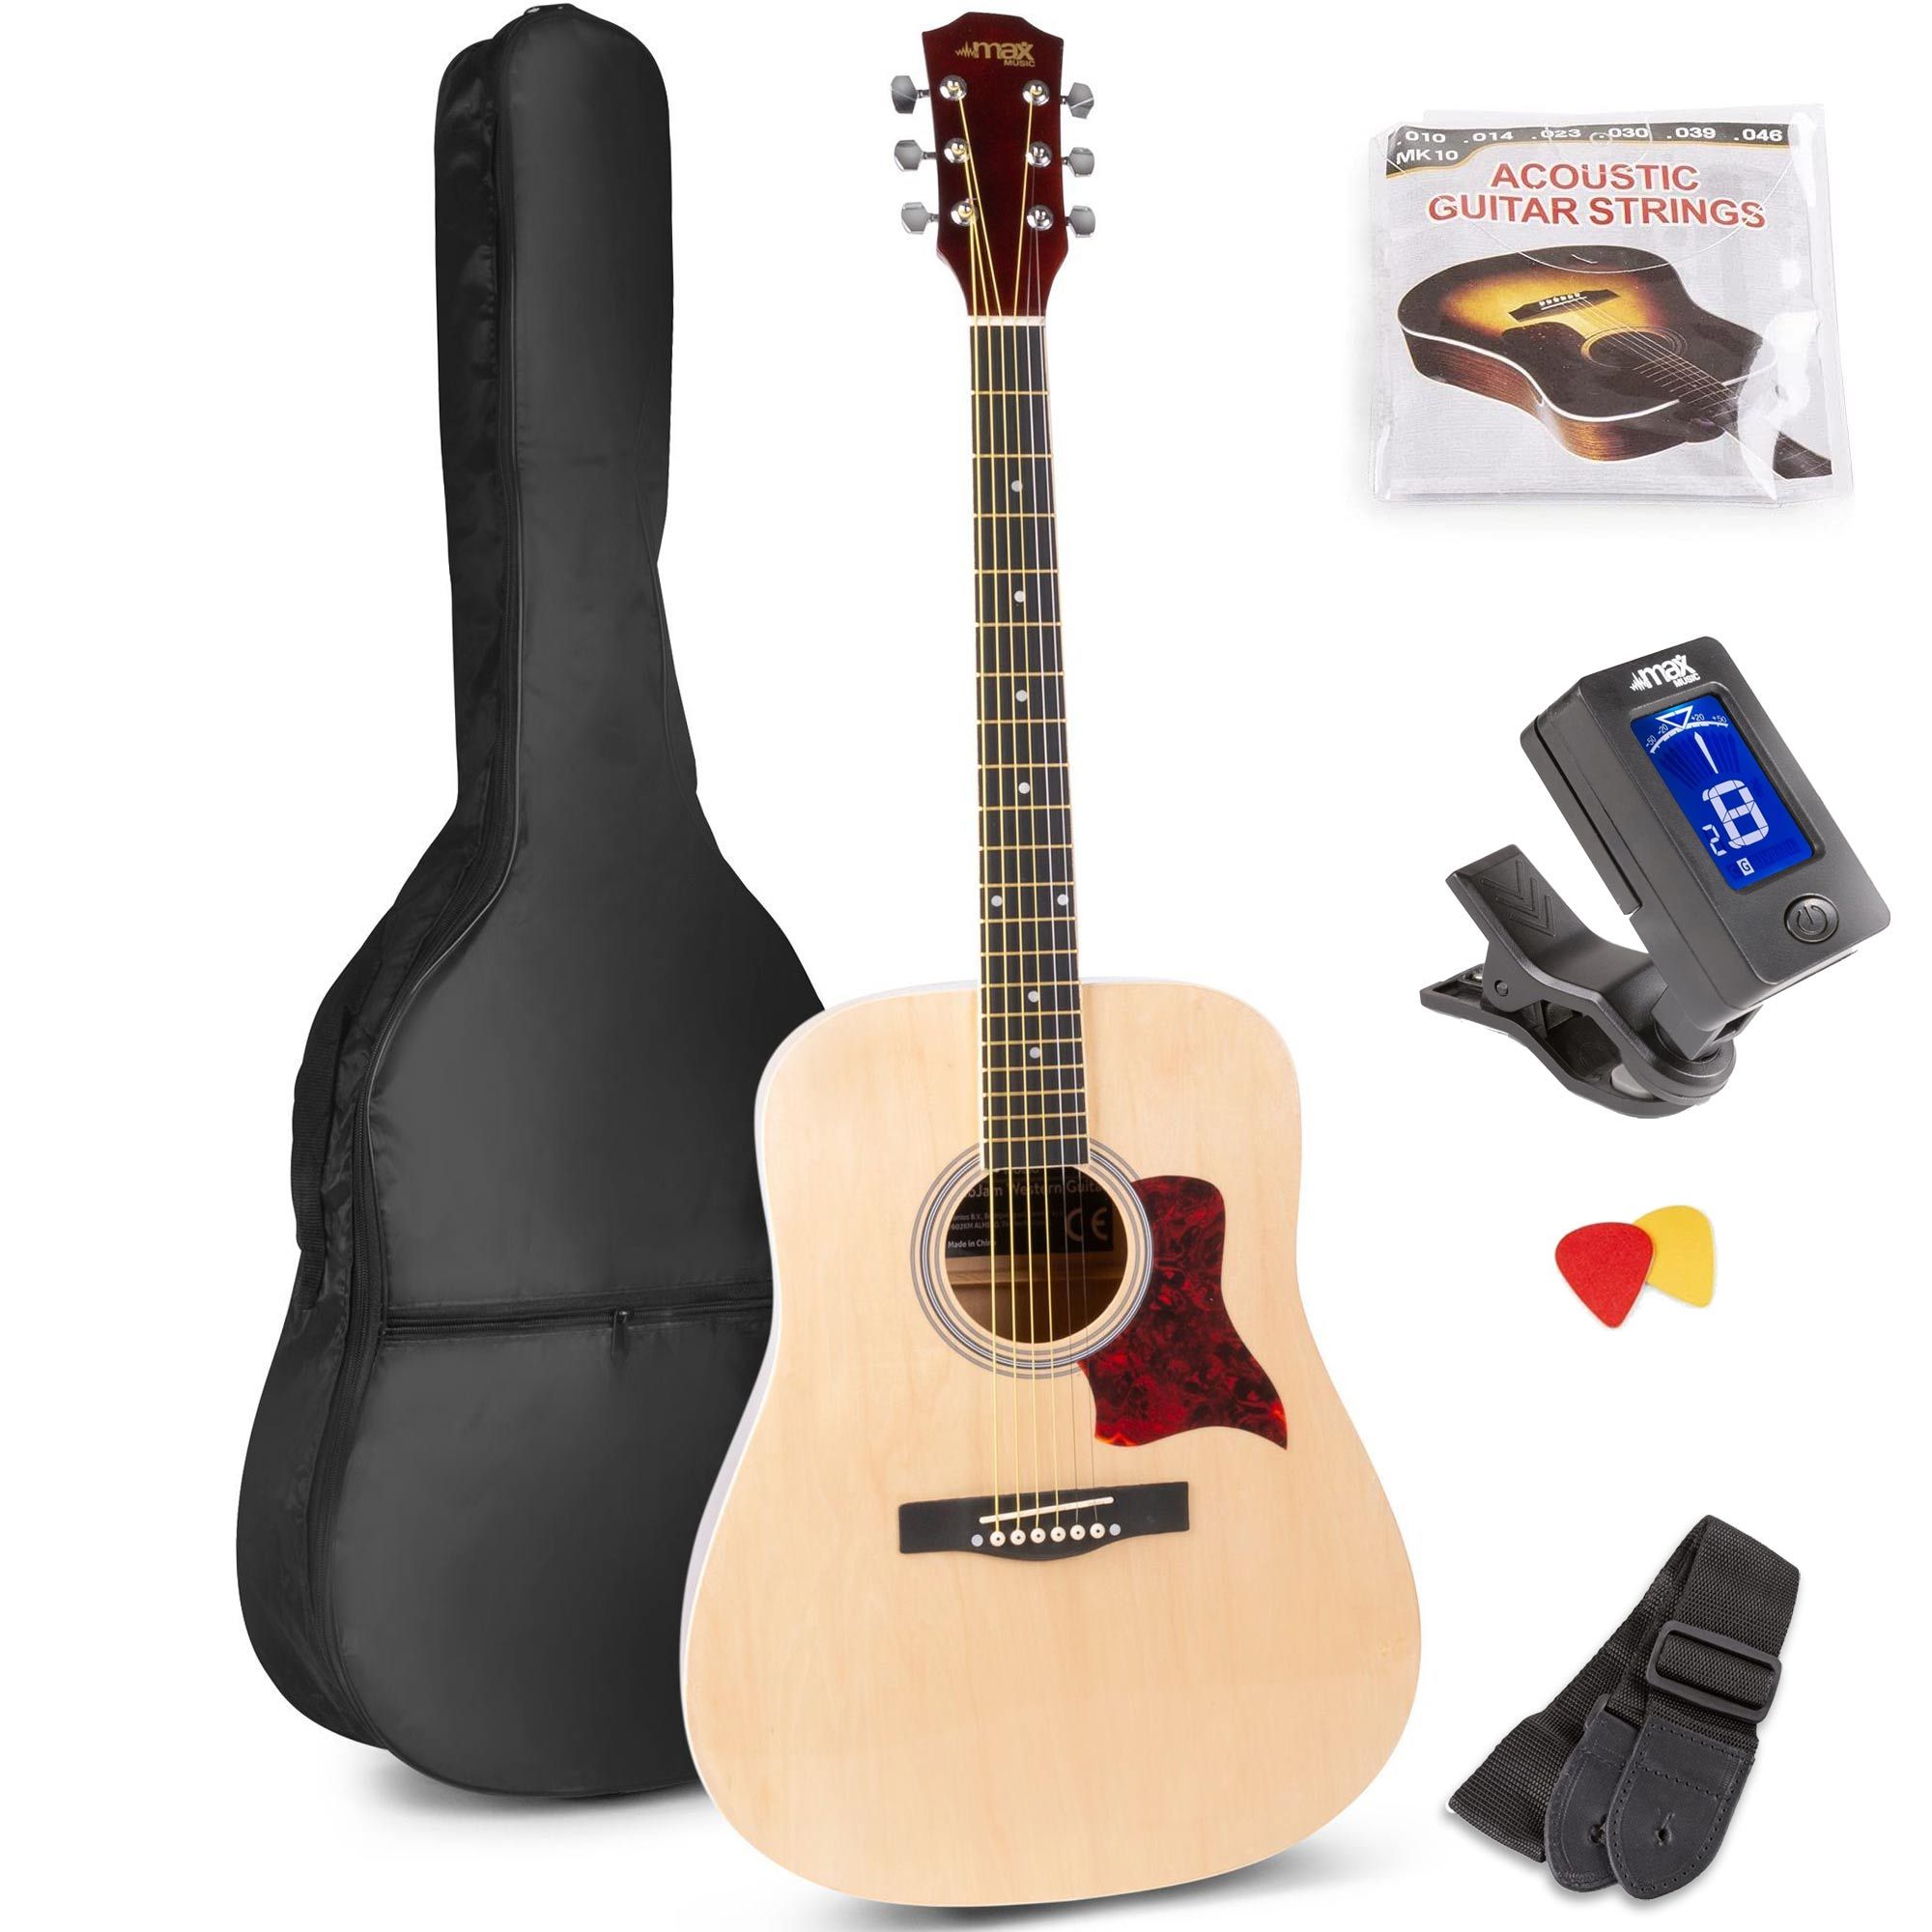 Behoren Haarzelf 945 MAX SoloJam Western akoestische gitaar starterset - Naturel (hout) kopen?